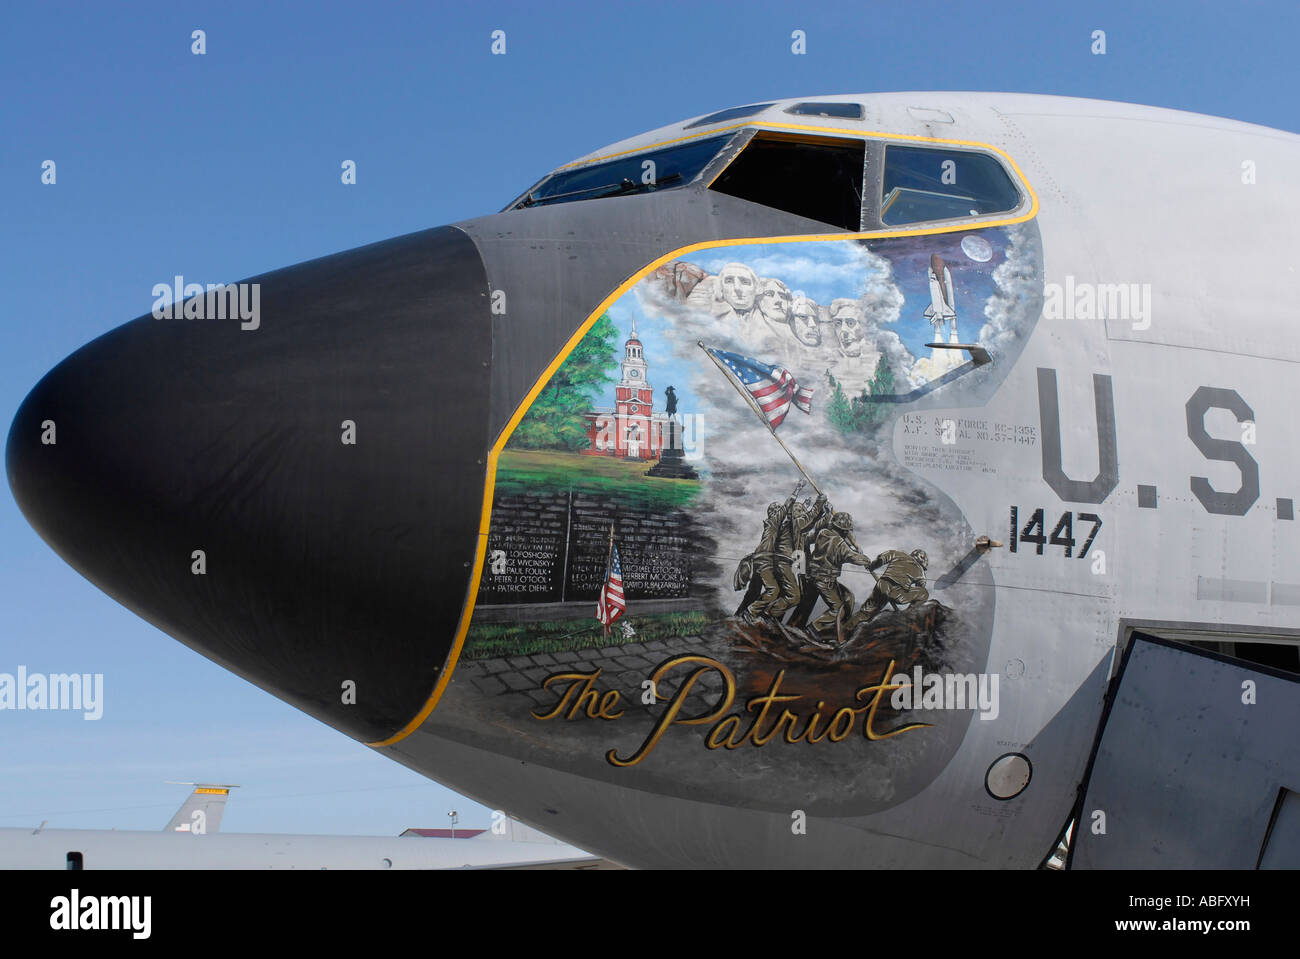 Le vieillissement de l'Iowa Air National Guard KC-135 Stratotanker, affichant l'art nez patriotique, est sur le point de prendre leur retraite. Banque D'Images